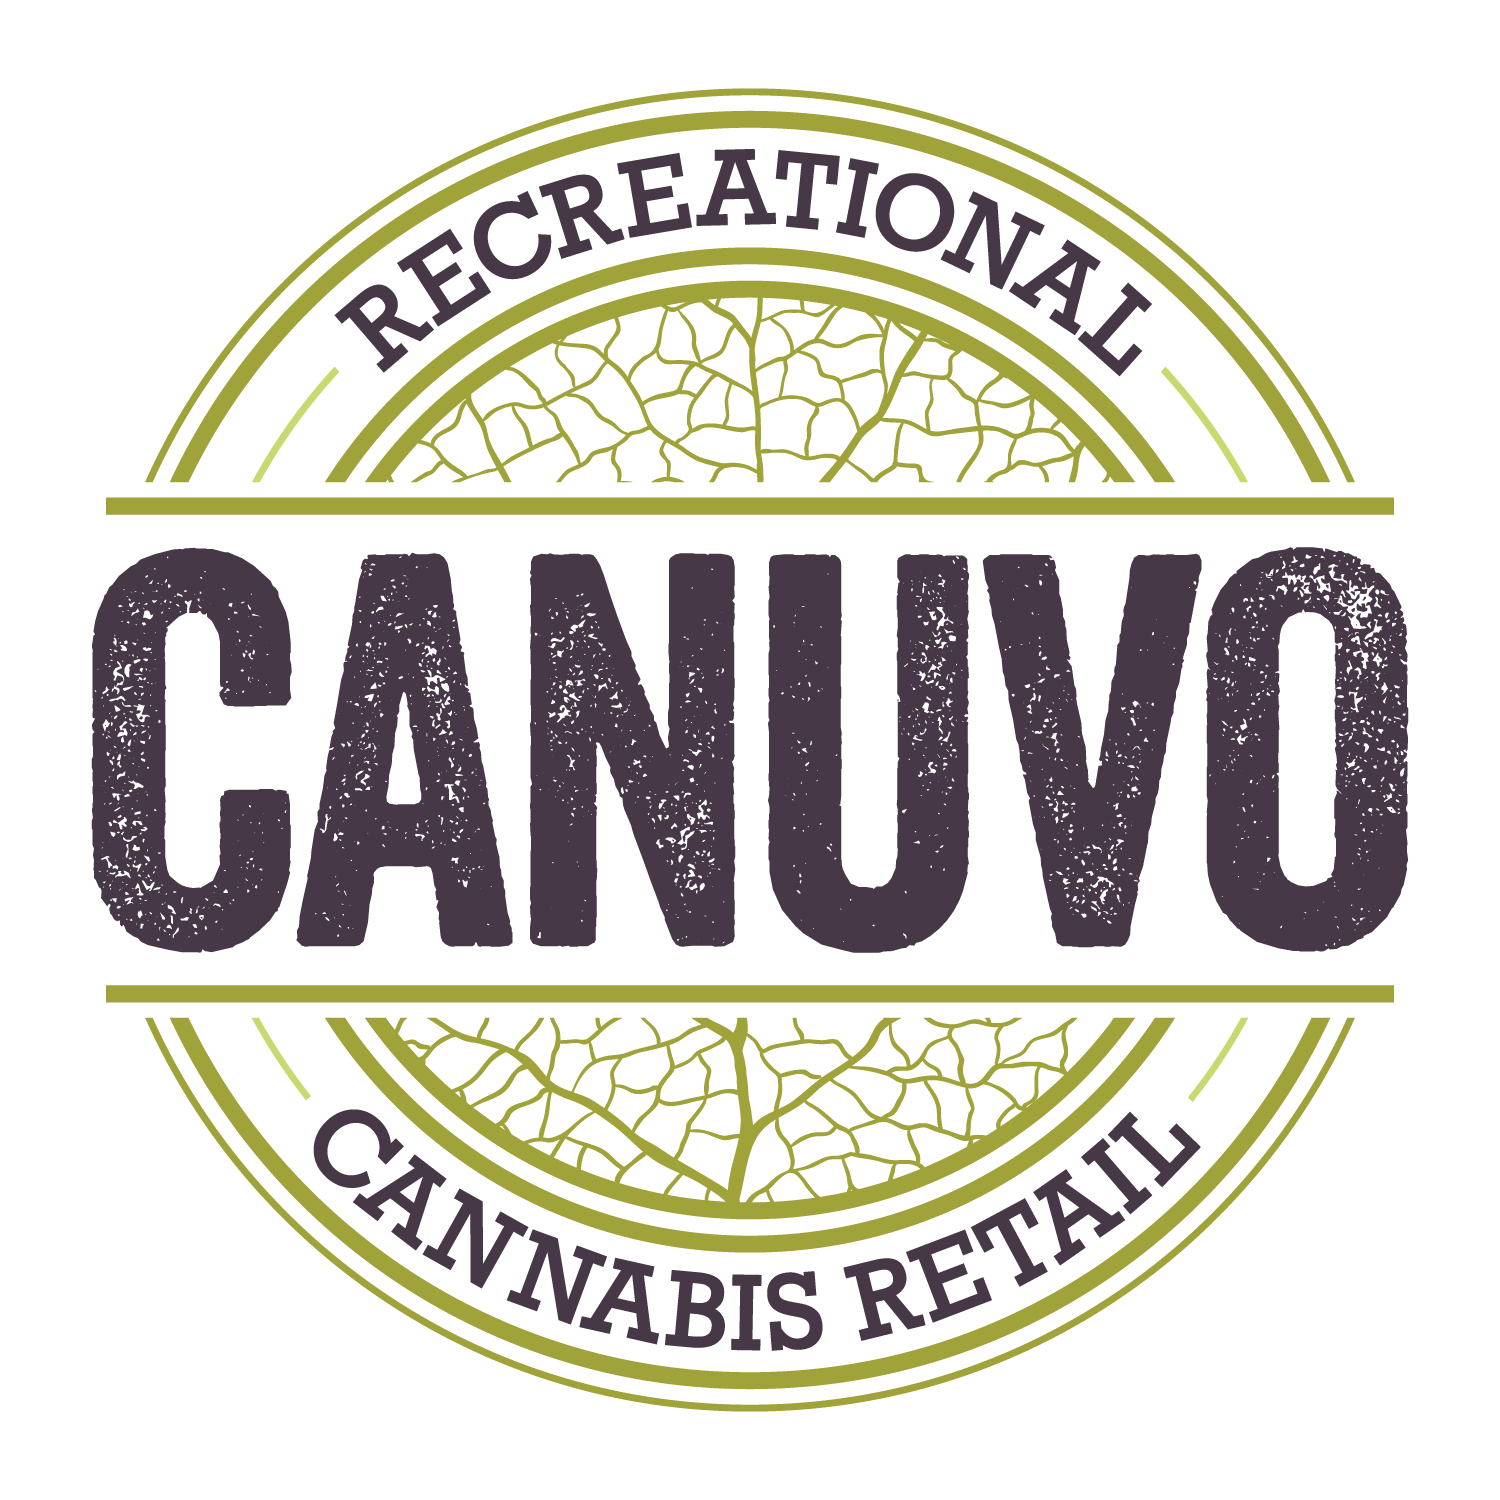 Canuvo Medical Cannabis Retail-logo